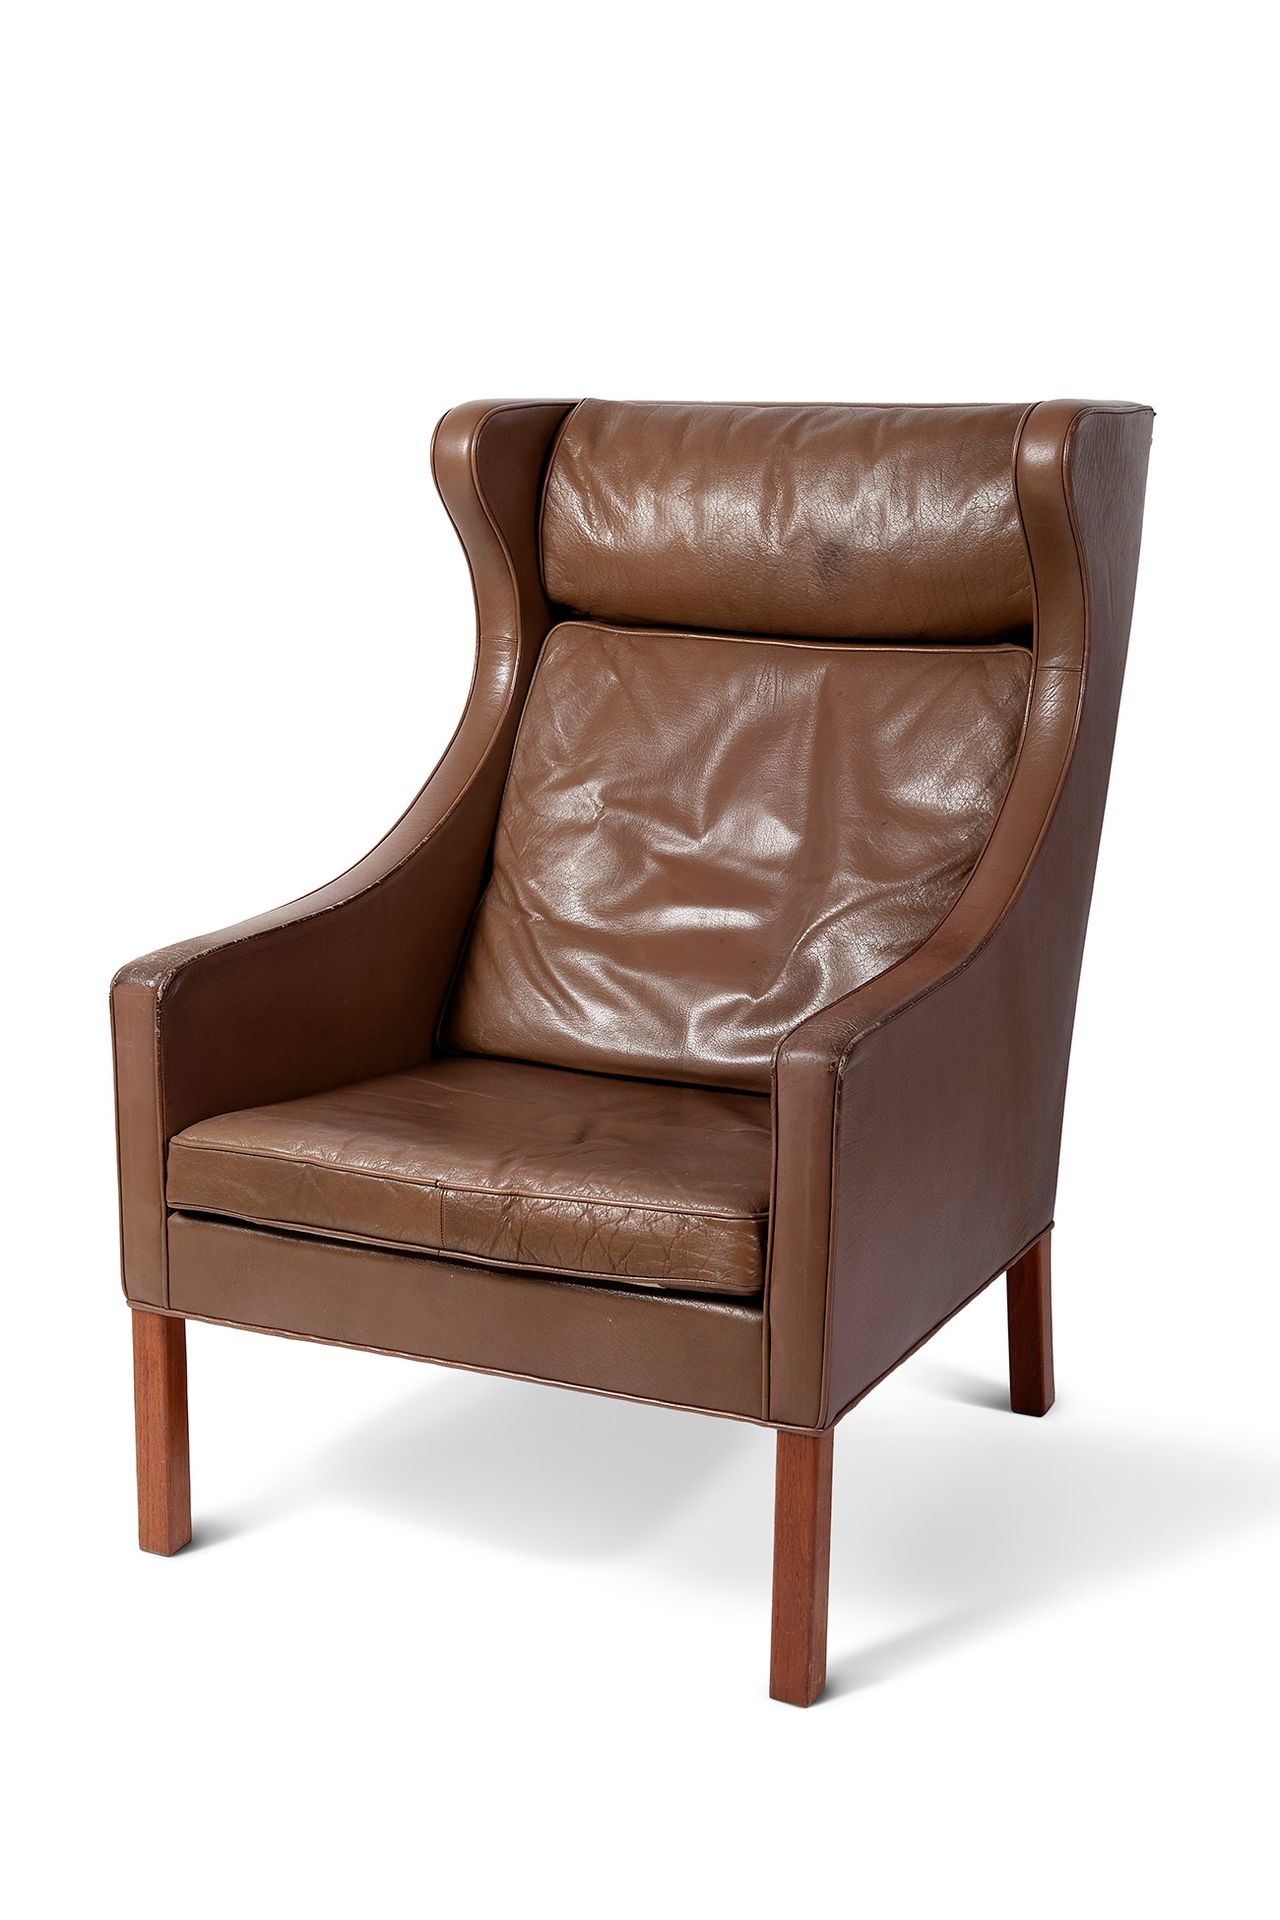 Danish design armchair, 60s-70s. Poltrona di design danese, anni 60-70.
Legno e &hellip;